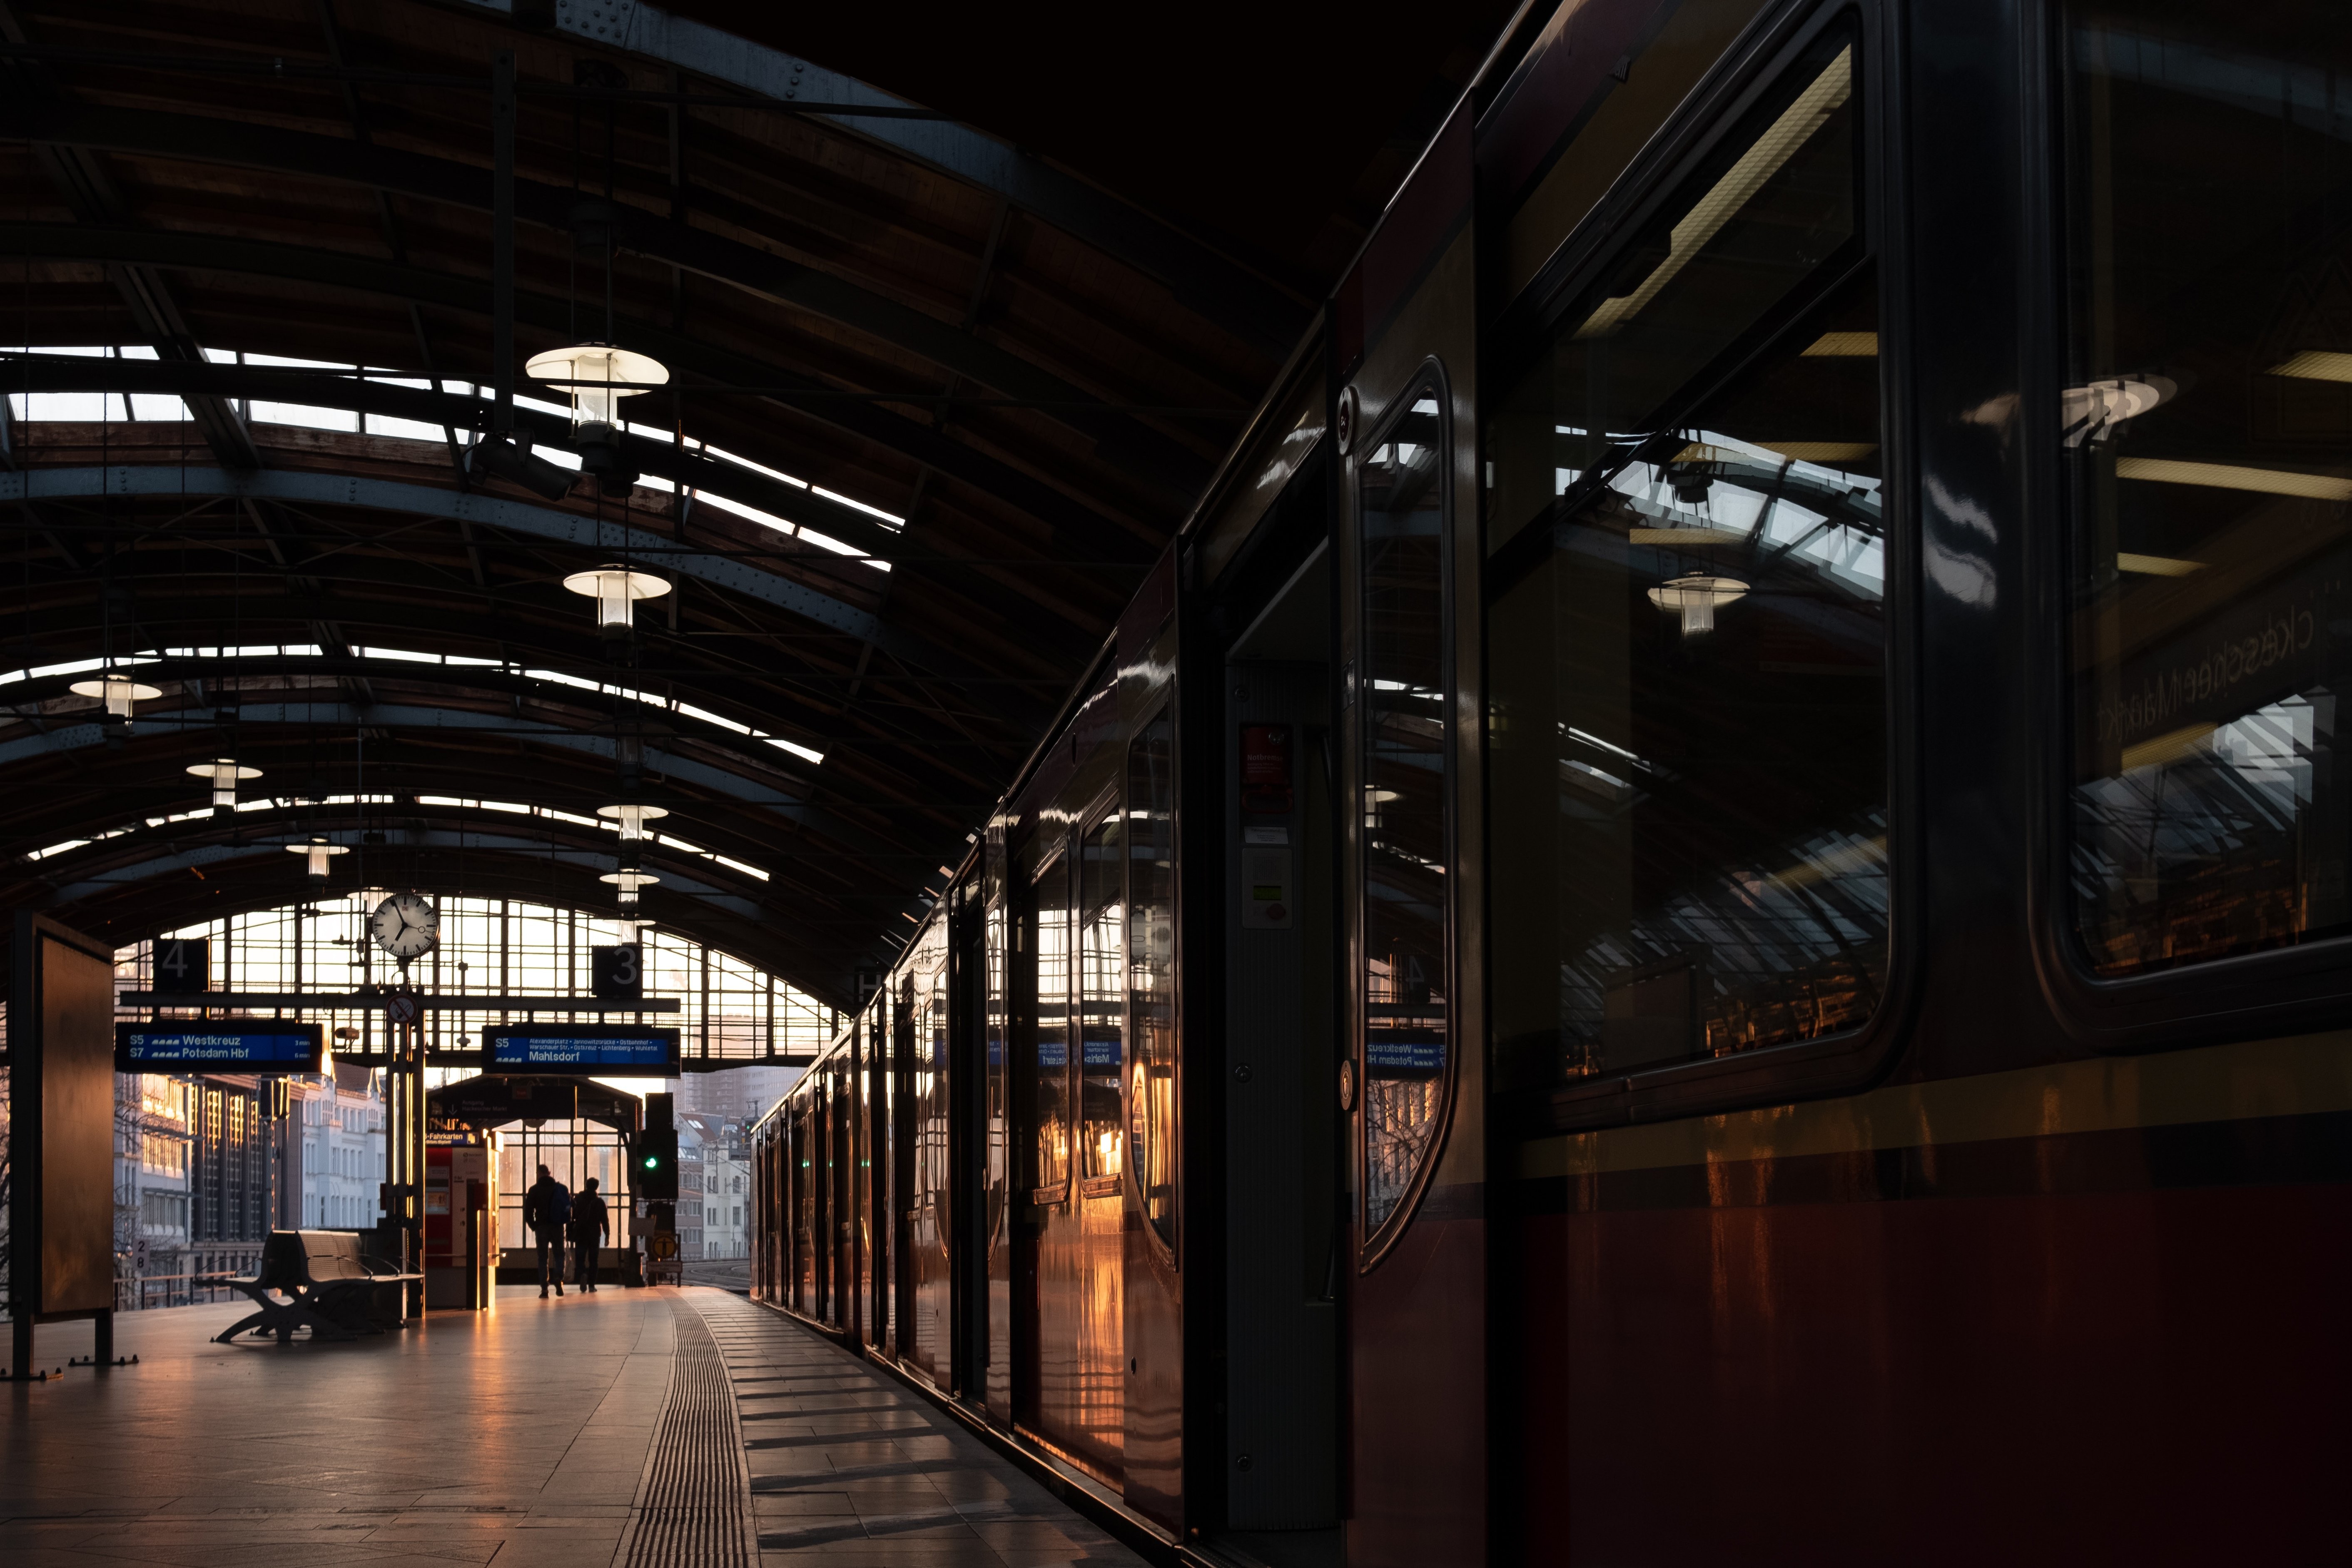 Sol poente ilumina foto da plataforma do trem 